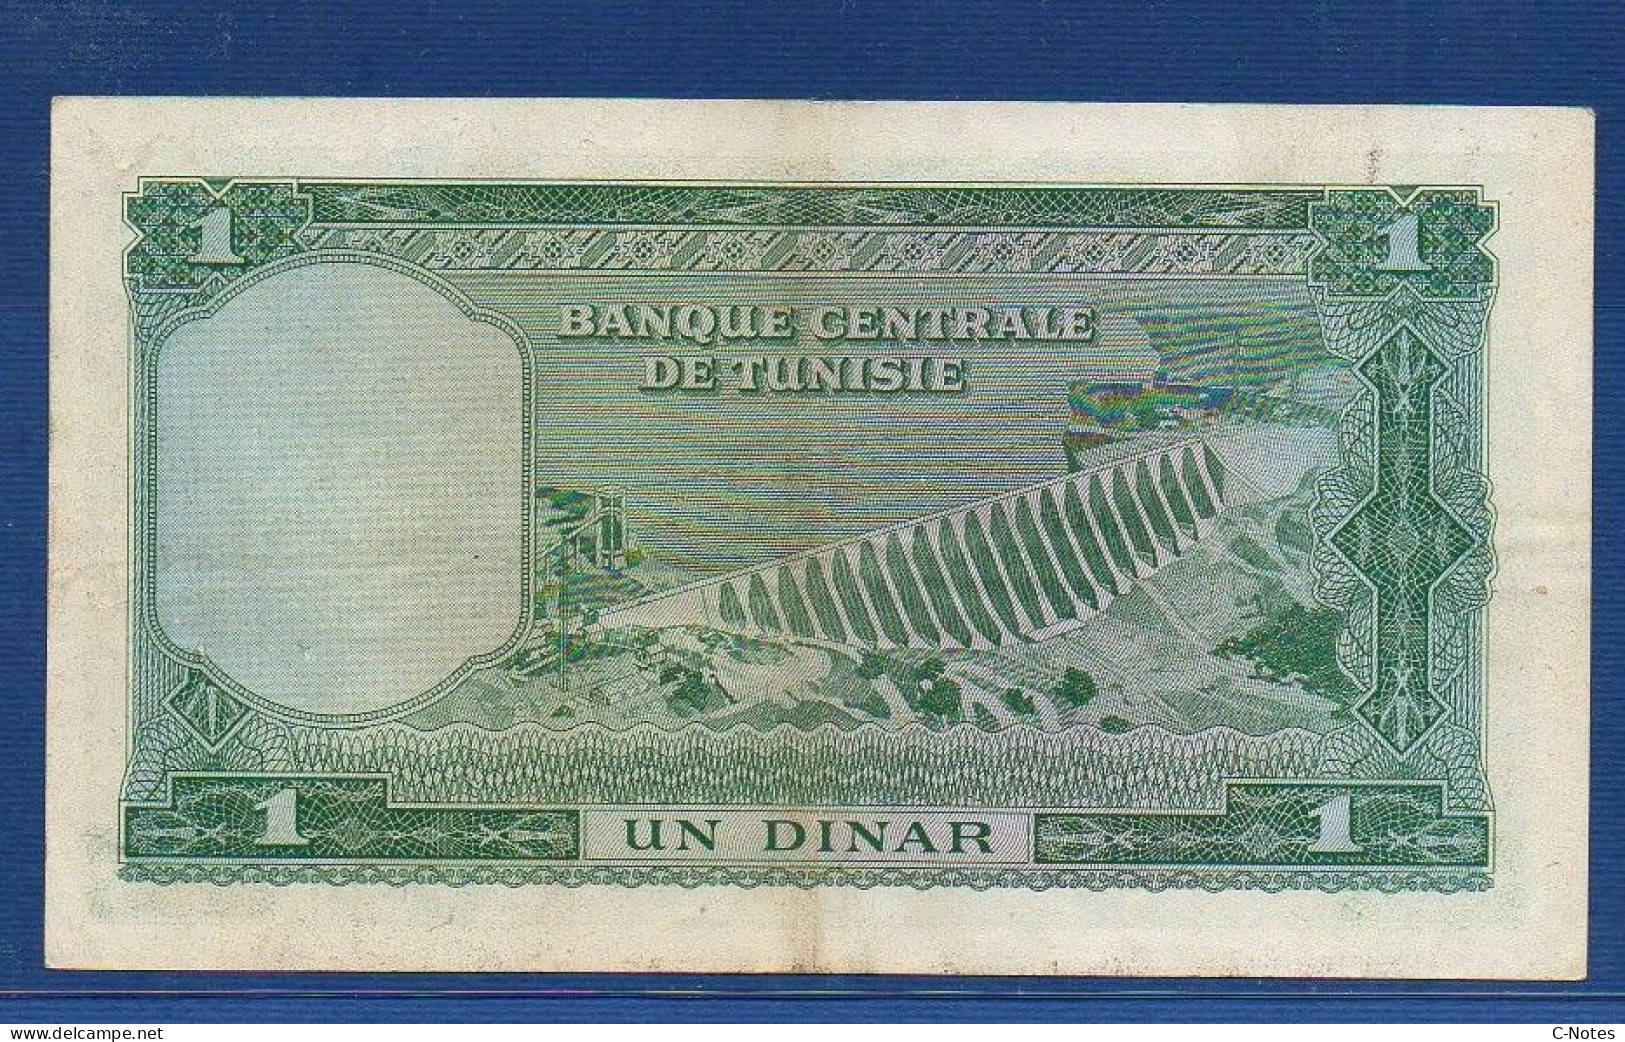 TUNISIA - P.58 – 1 Dinar ND (1958) AXF, S/n B/5 865869 - Tunisie